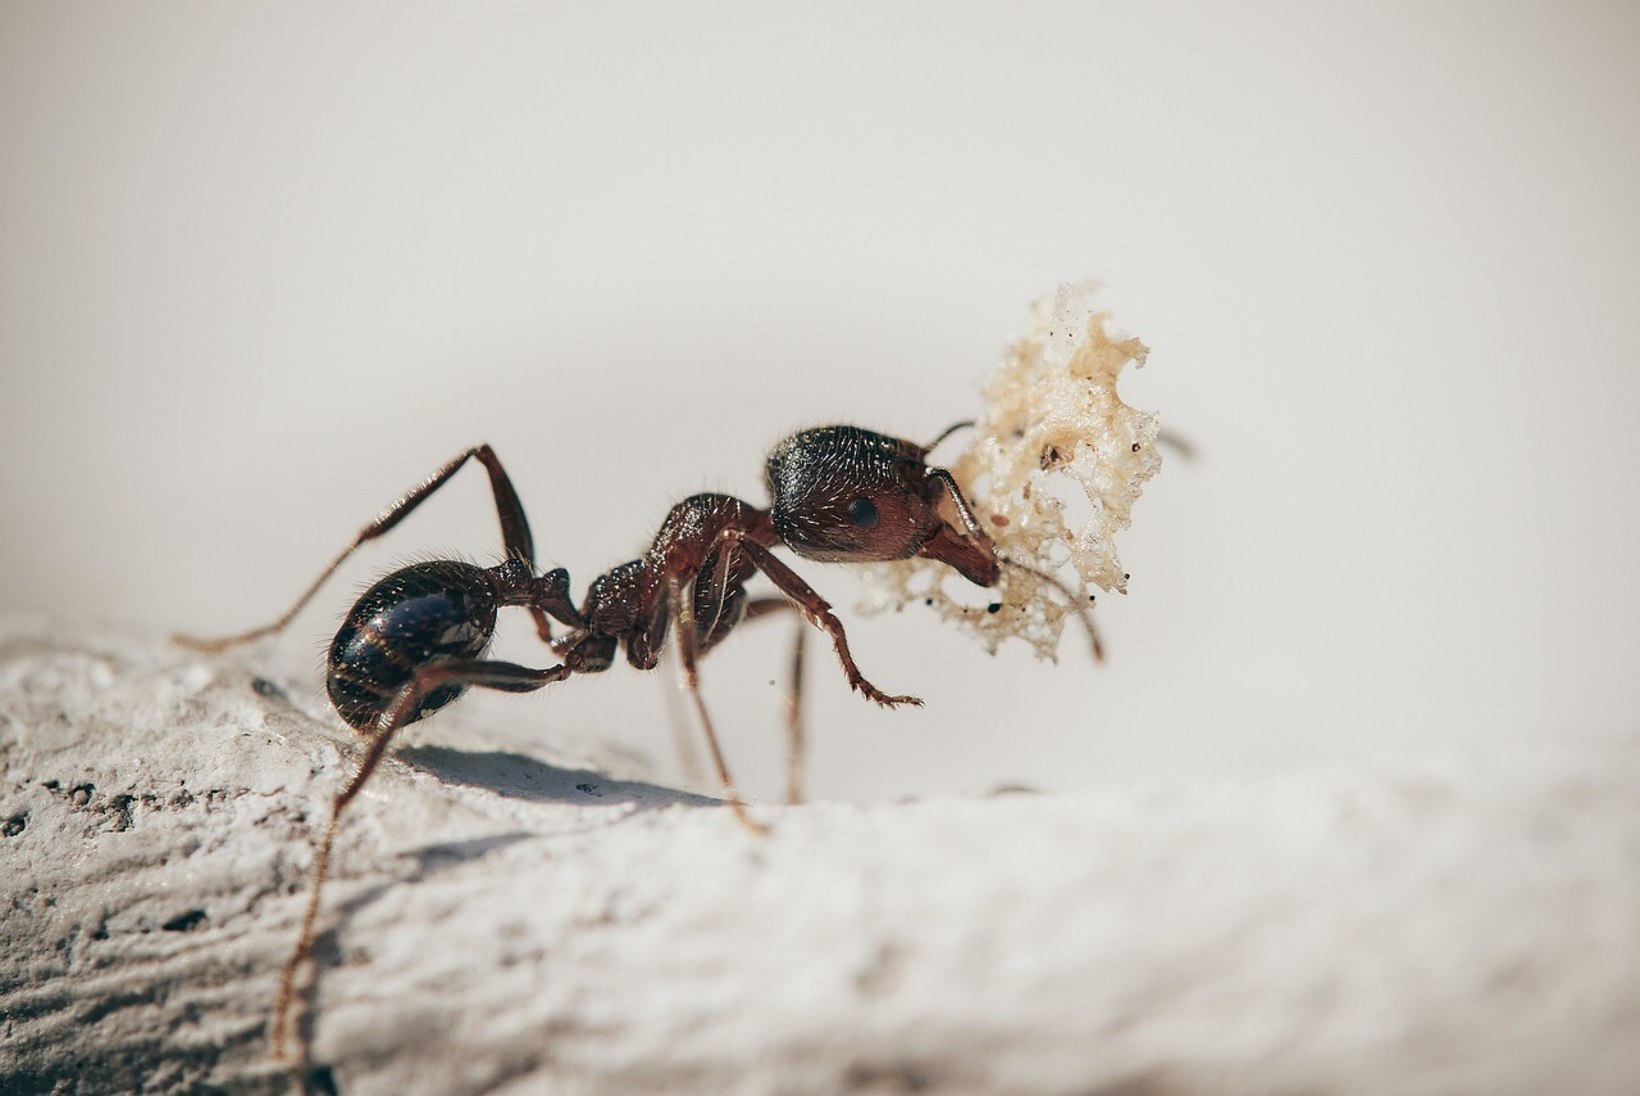 Naistelehe kodu-uudised: põnevad viisid, kuidas purke enne ringlusse viimist kasutada ja kuidas tõrjuda sipelgaid?